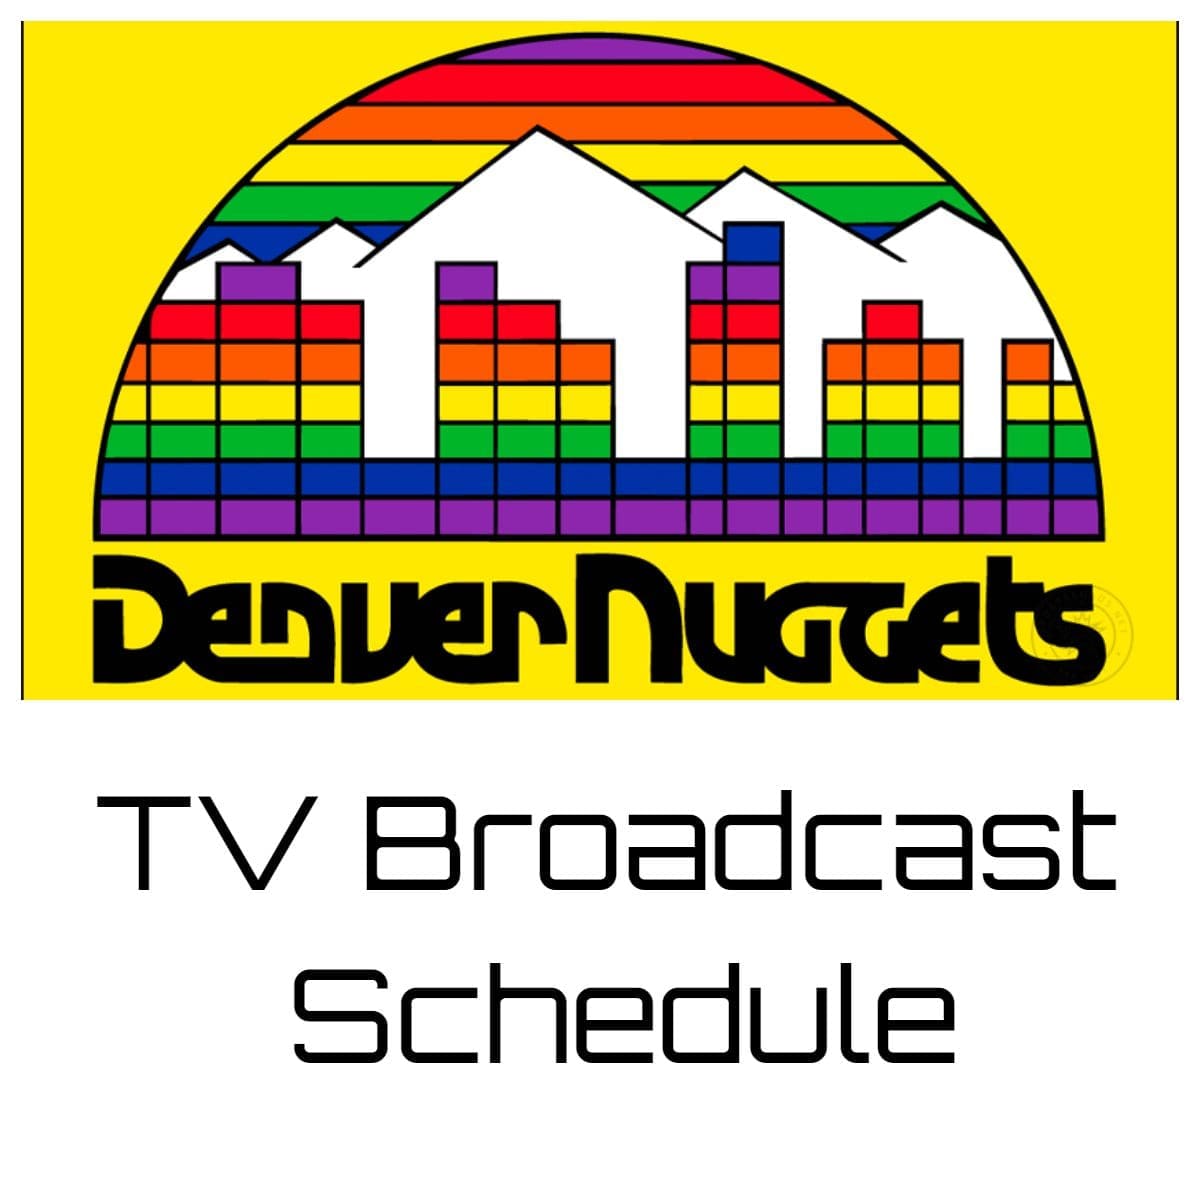 Denver Nuggets TV Broadcast Schedule